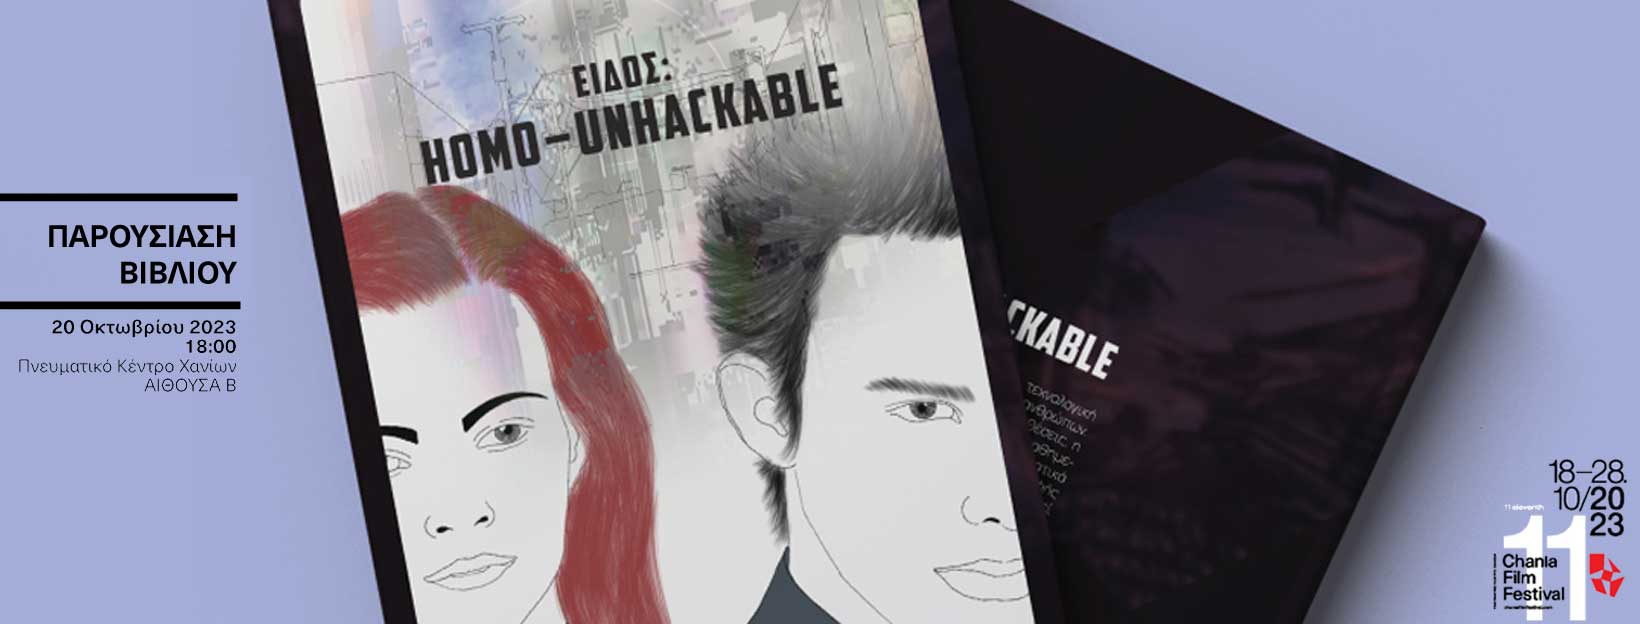 Παρουσίαση του graphic novel "Είδος: Homo-Unhackable"